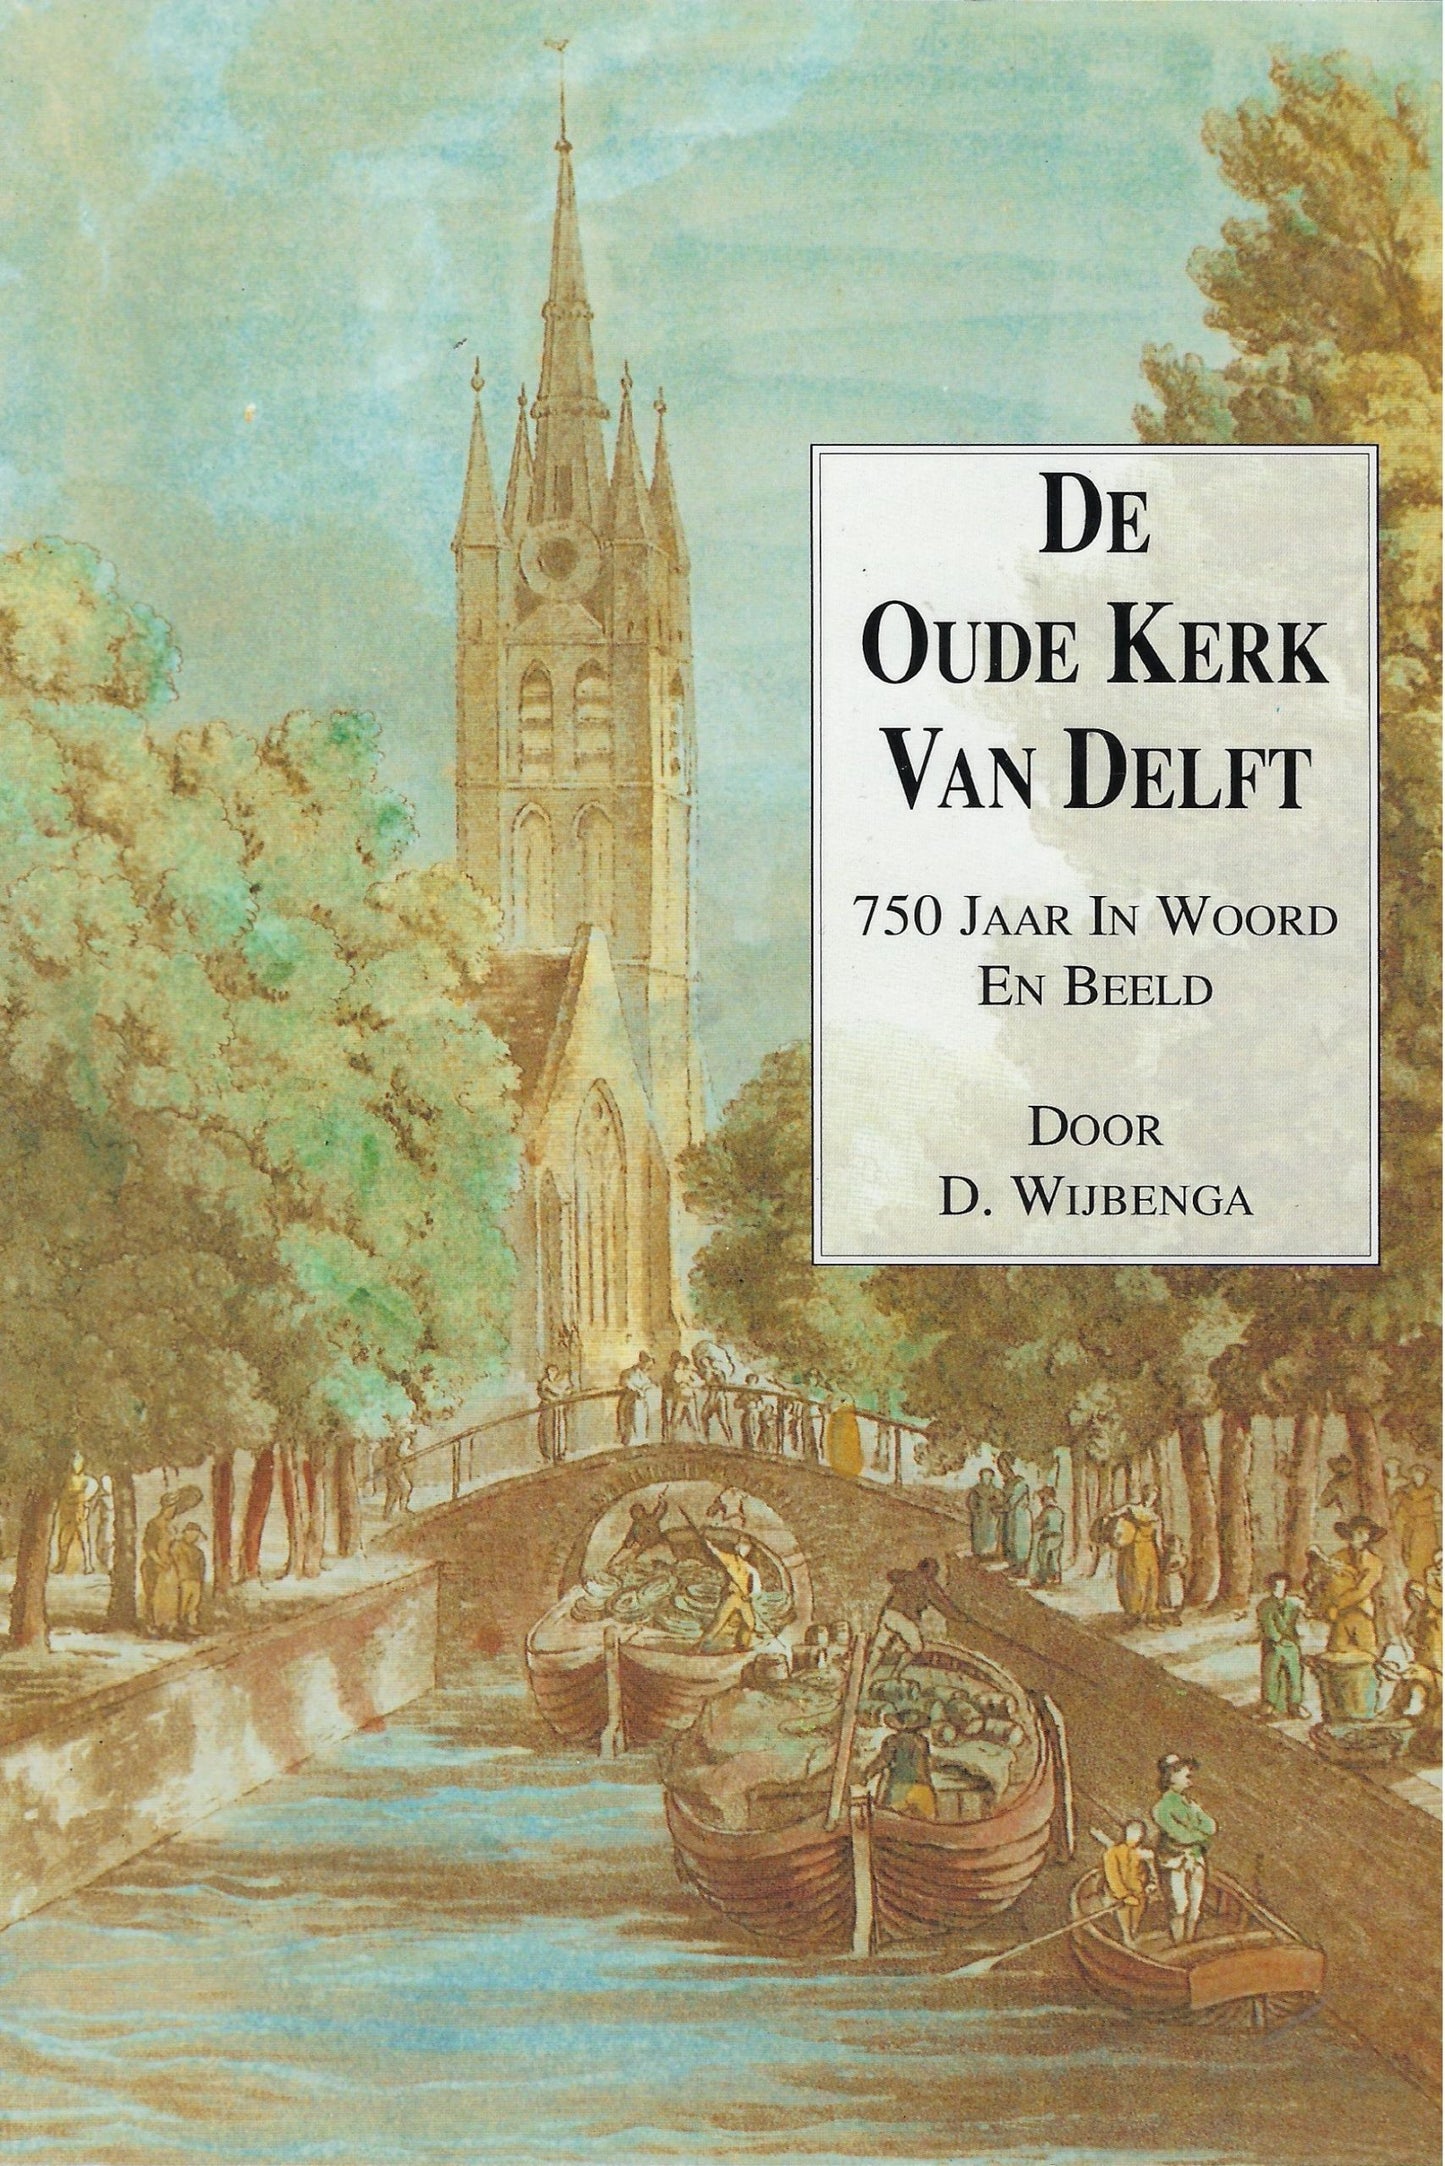 De Oude kerk van Delft, 750 jaar in woord en beeld